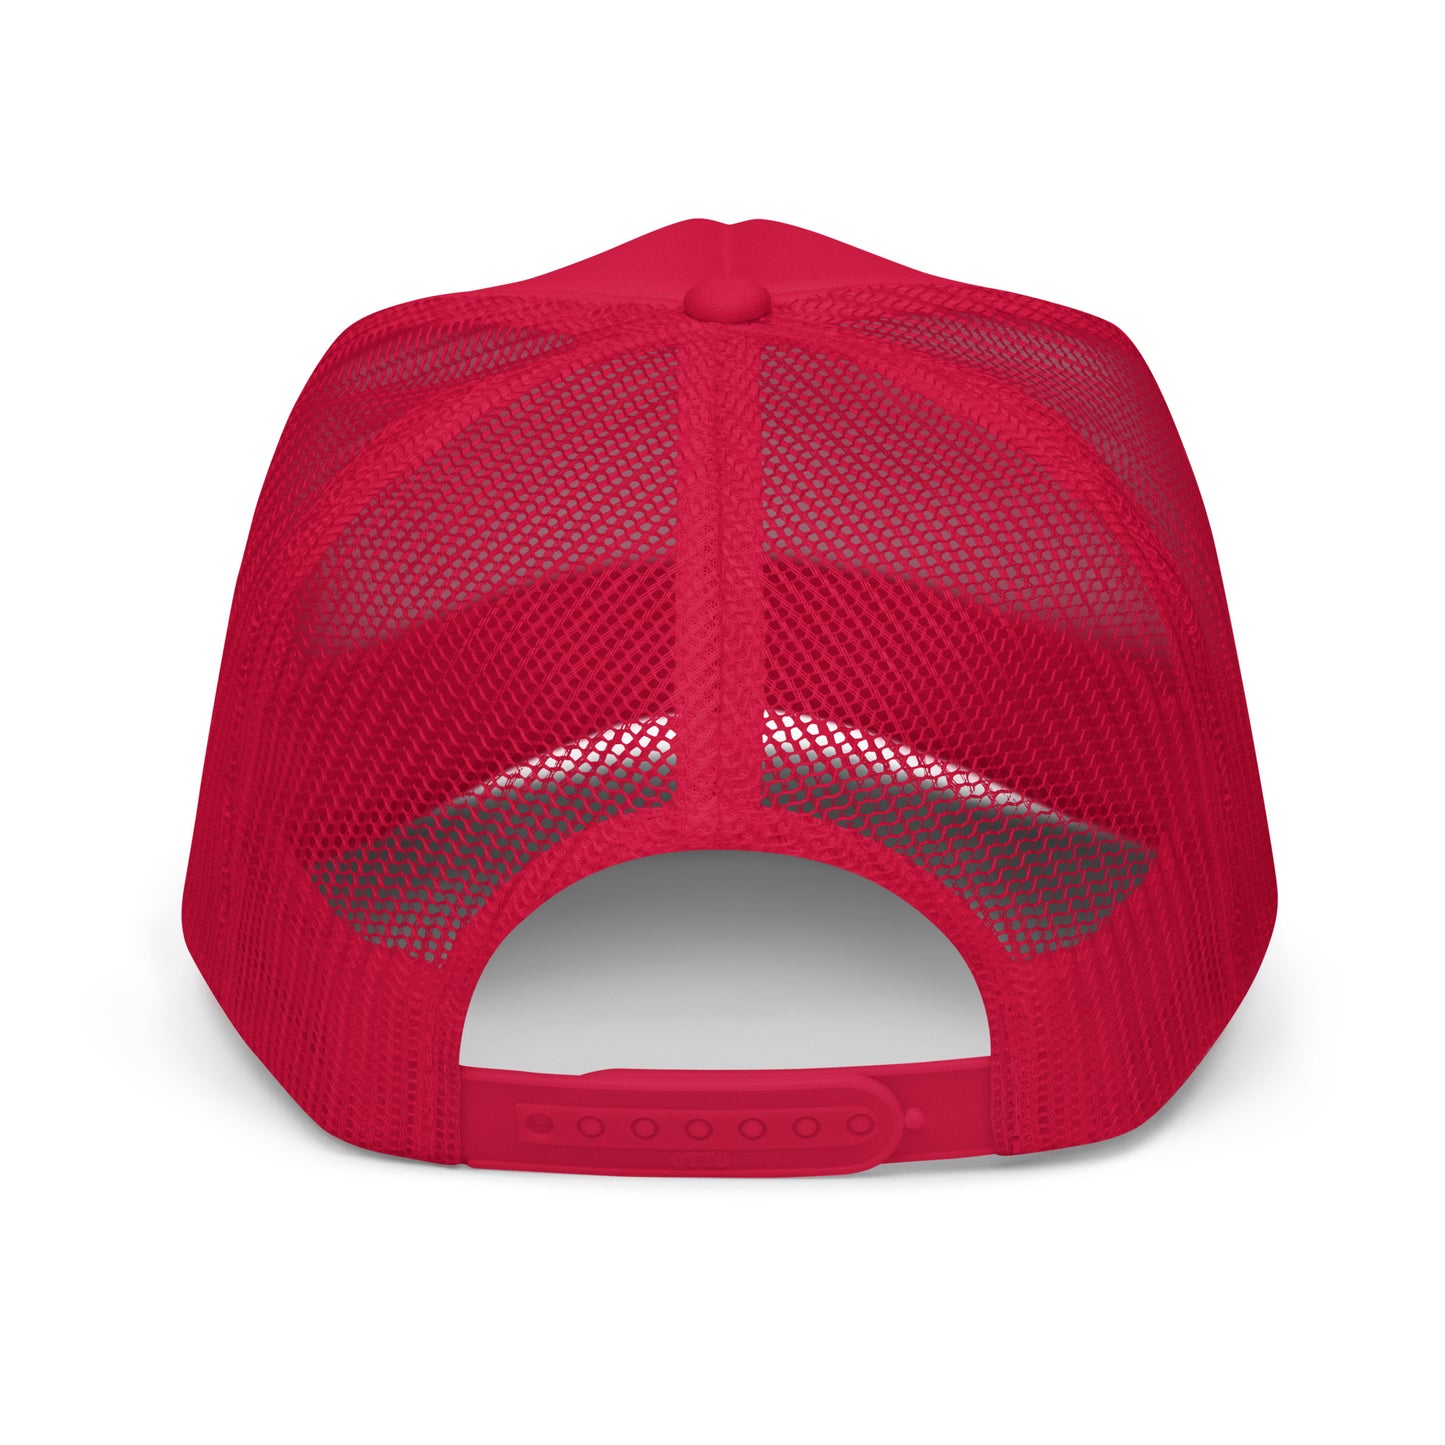 Trucker Hat [Red]